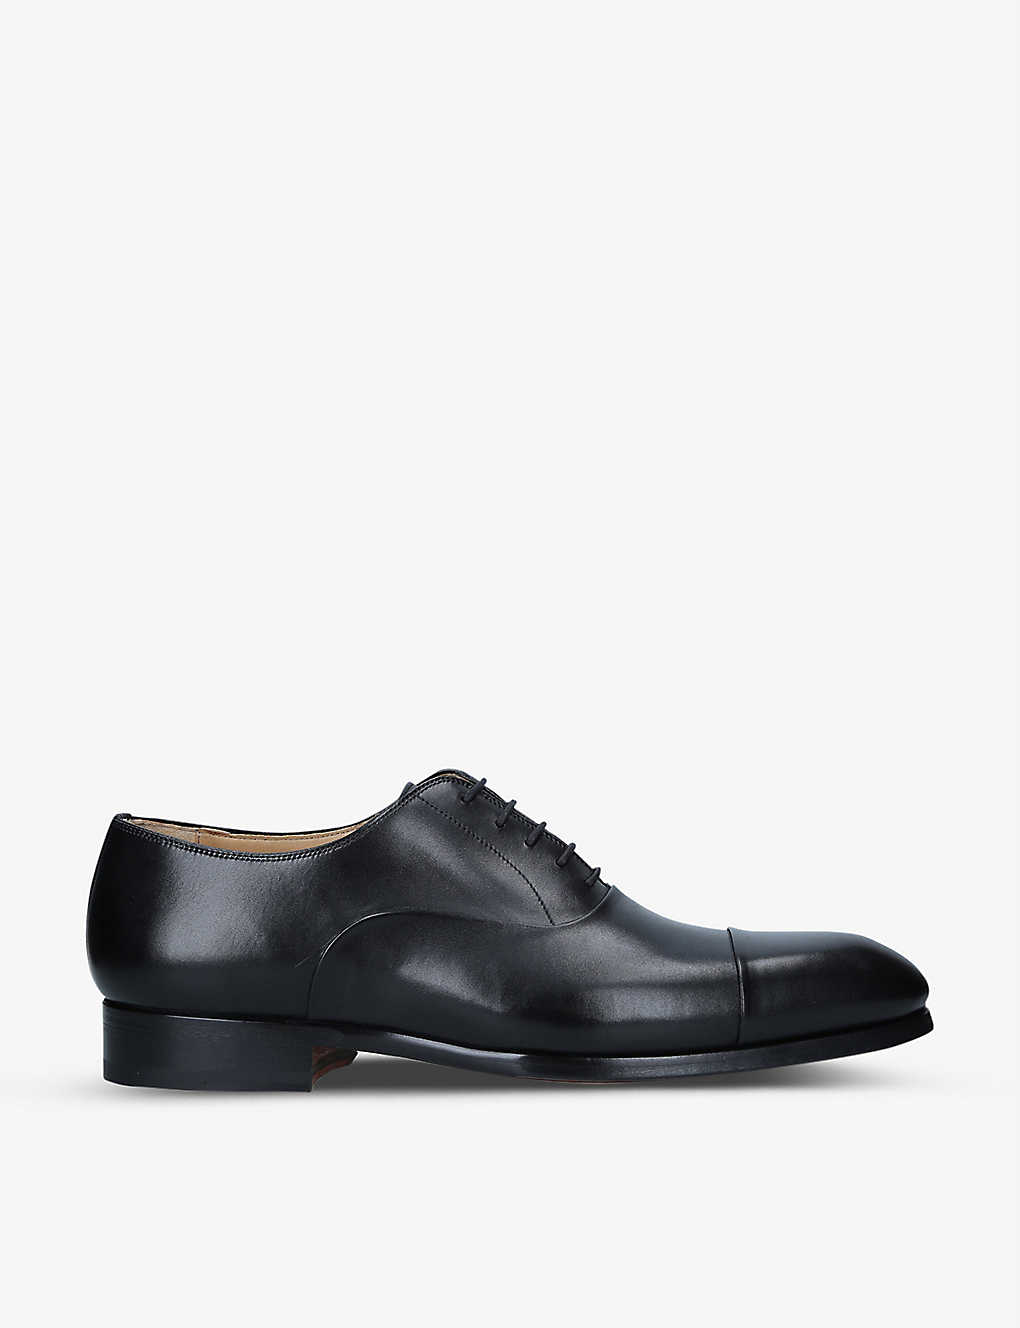 Shop Magnanni Men's Black Lace-up Leather Oxford Shoes